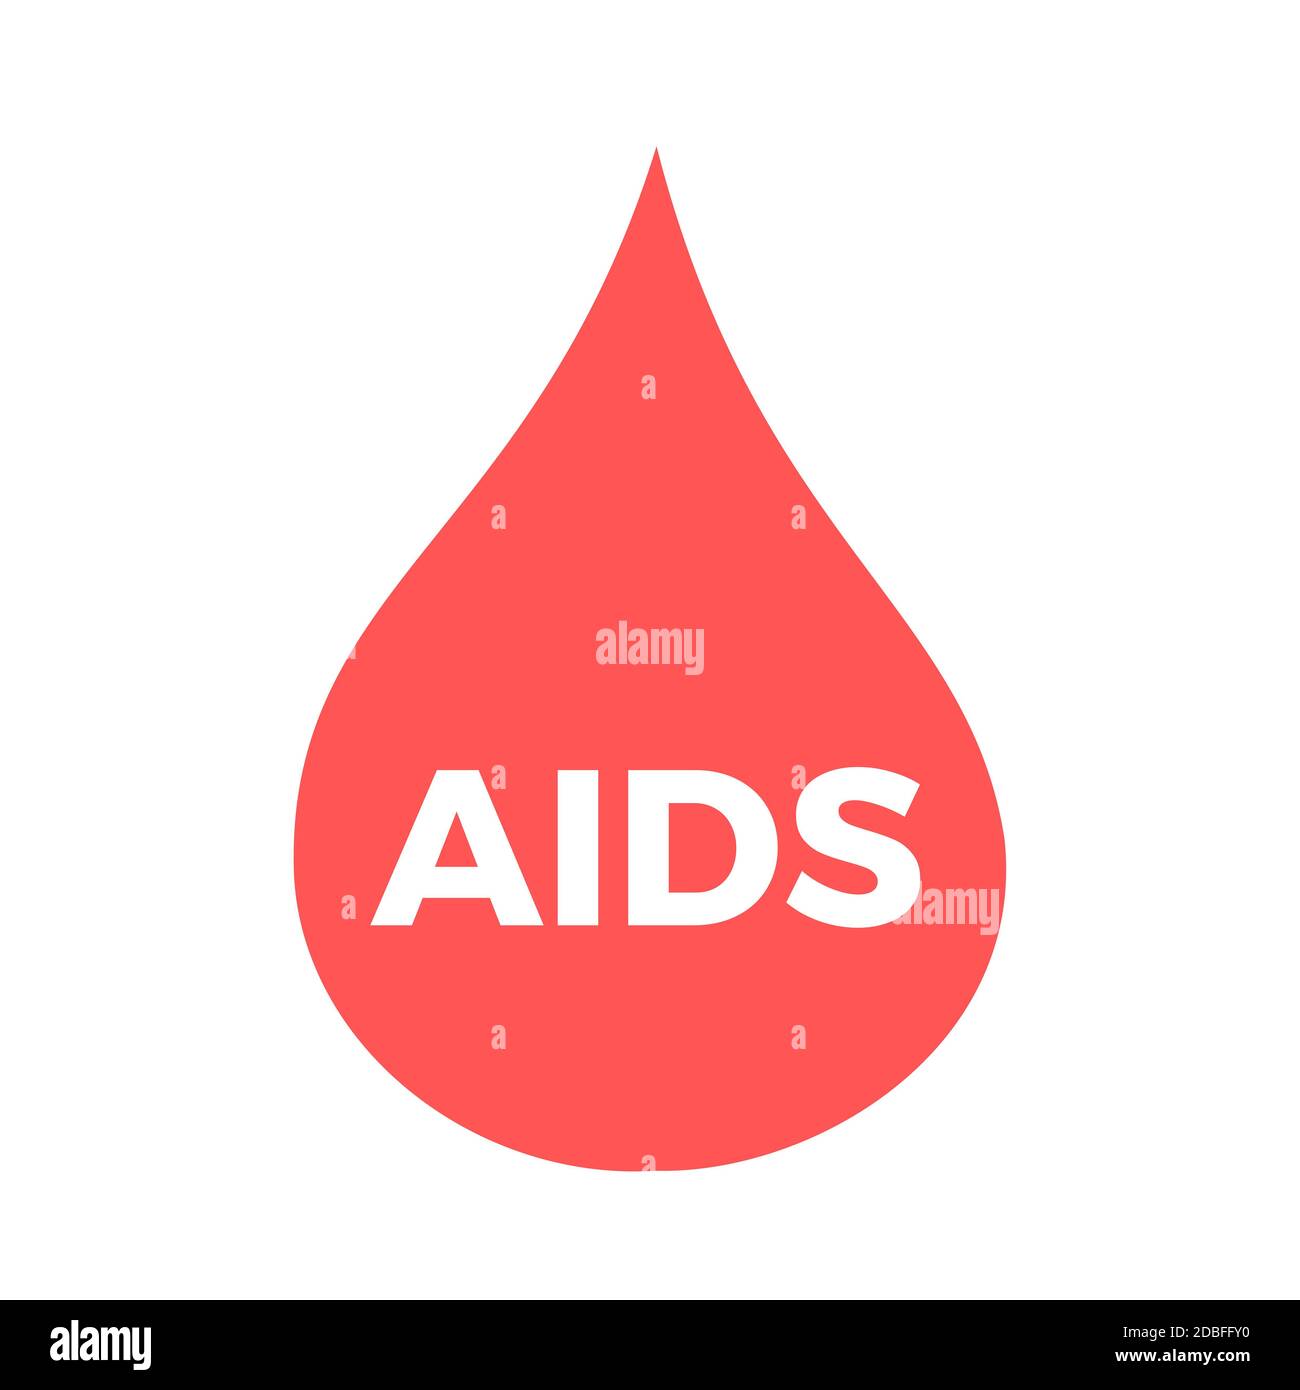 HIV e AIDS - la goccia rossa di sangue è infetta da malattie e infezioni sessualmente trasmesse (STI, STD). Diagnosi medicinale. Immagine vettoriale isola Foto Stock